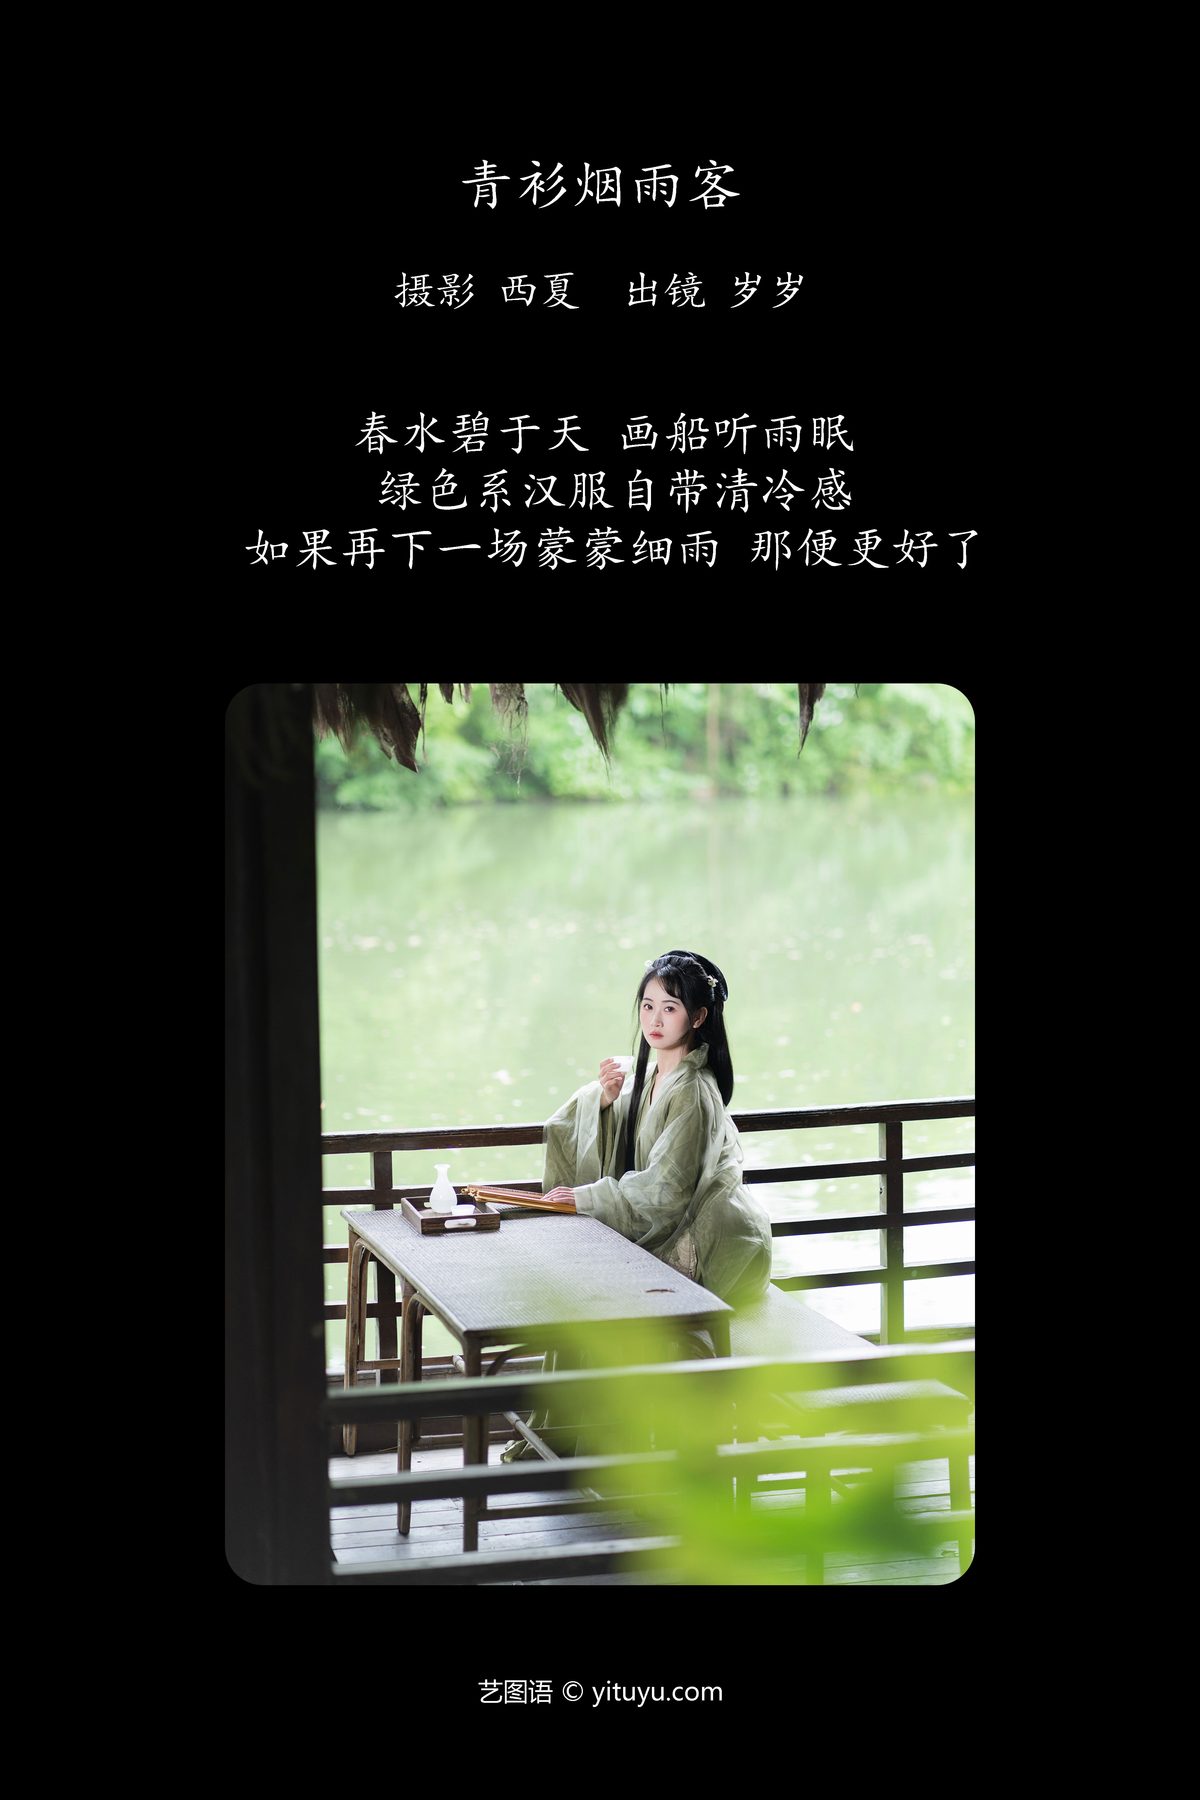 YiTuYu艺图语 Vol 5784 Jiao Yi Zhi Sui Sui 0001 3115323221.jpg